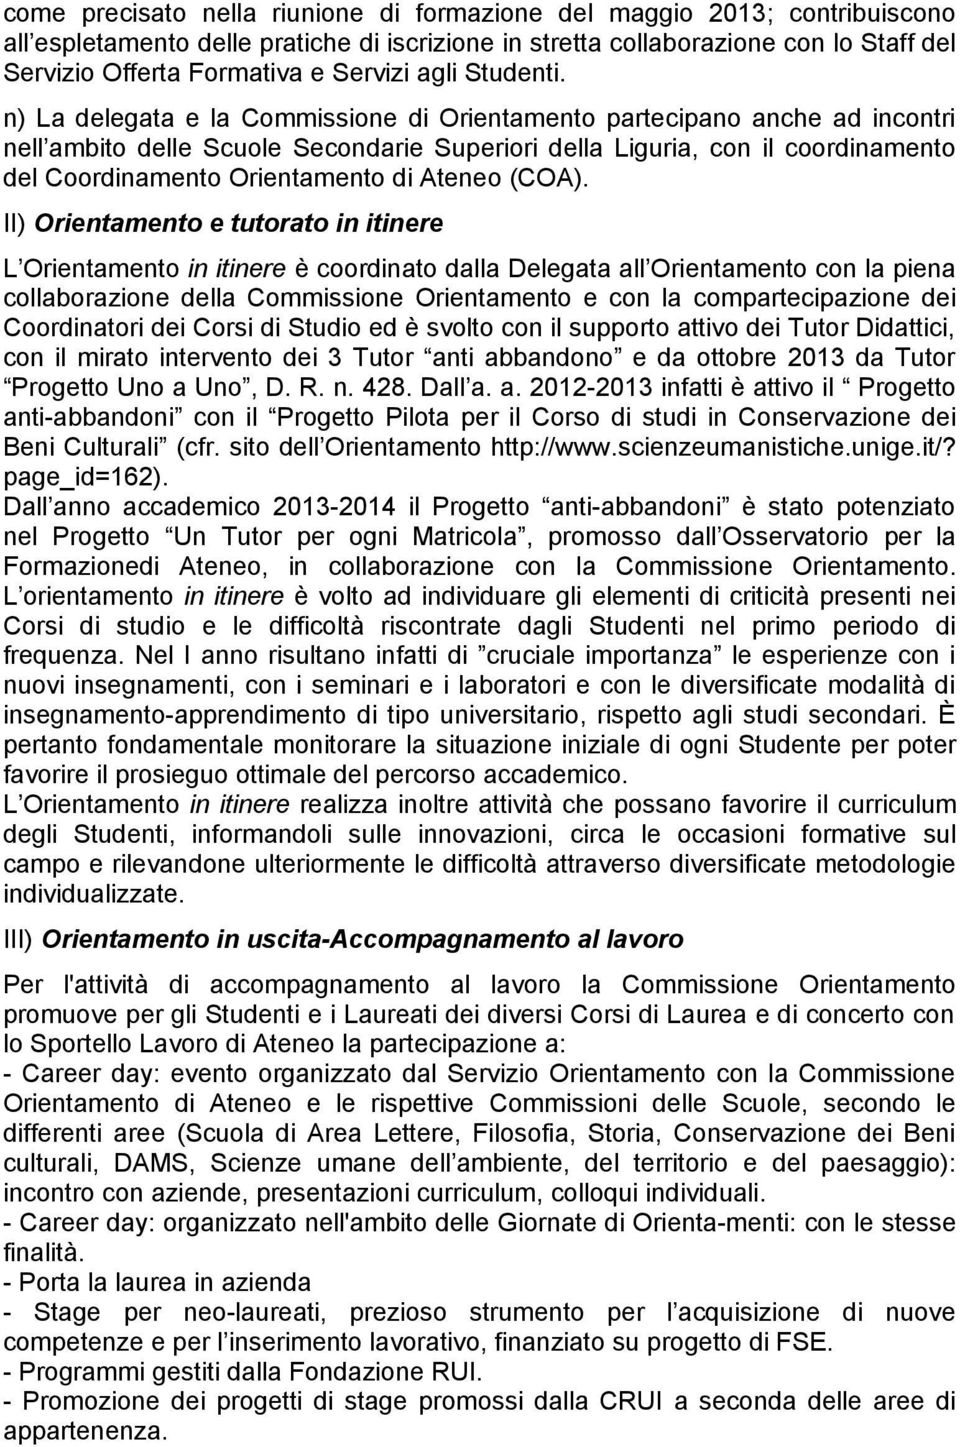 n) La delegata e la Commissione di Orientamento partecipano anche ad incontri nell ambito delle Scuole Secondarie Superiori della Liguria, con il coordinamento del Coordinamento Orientamento di